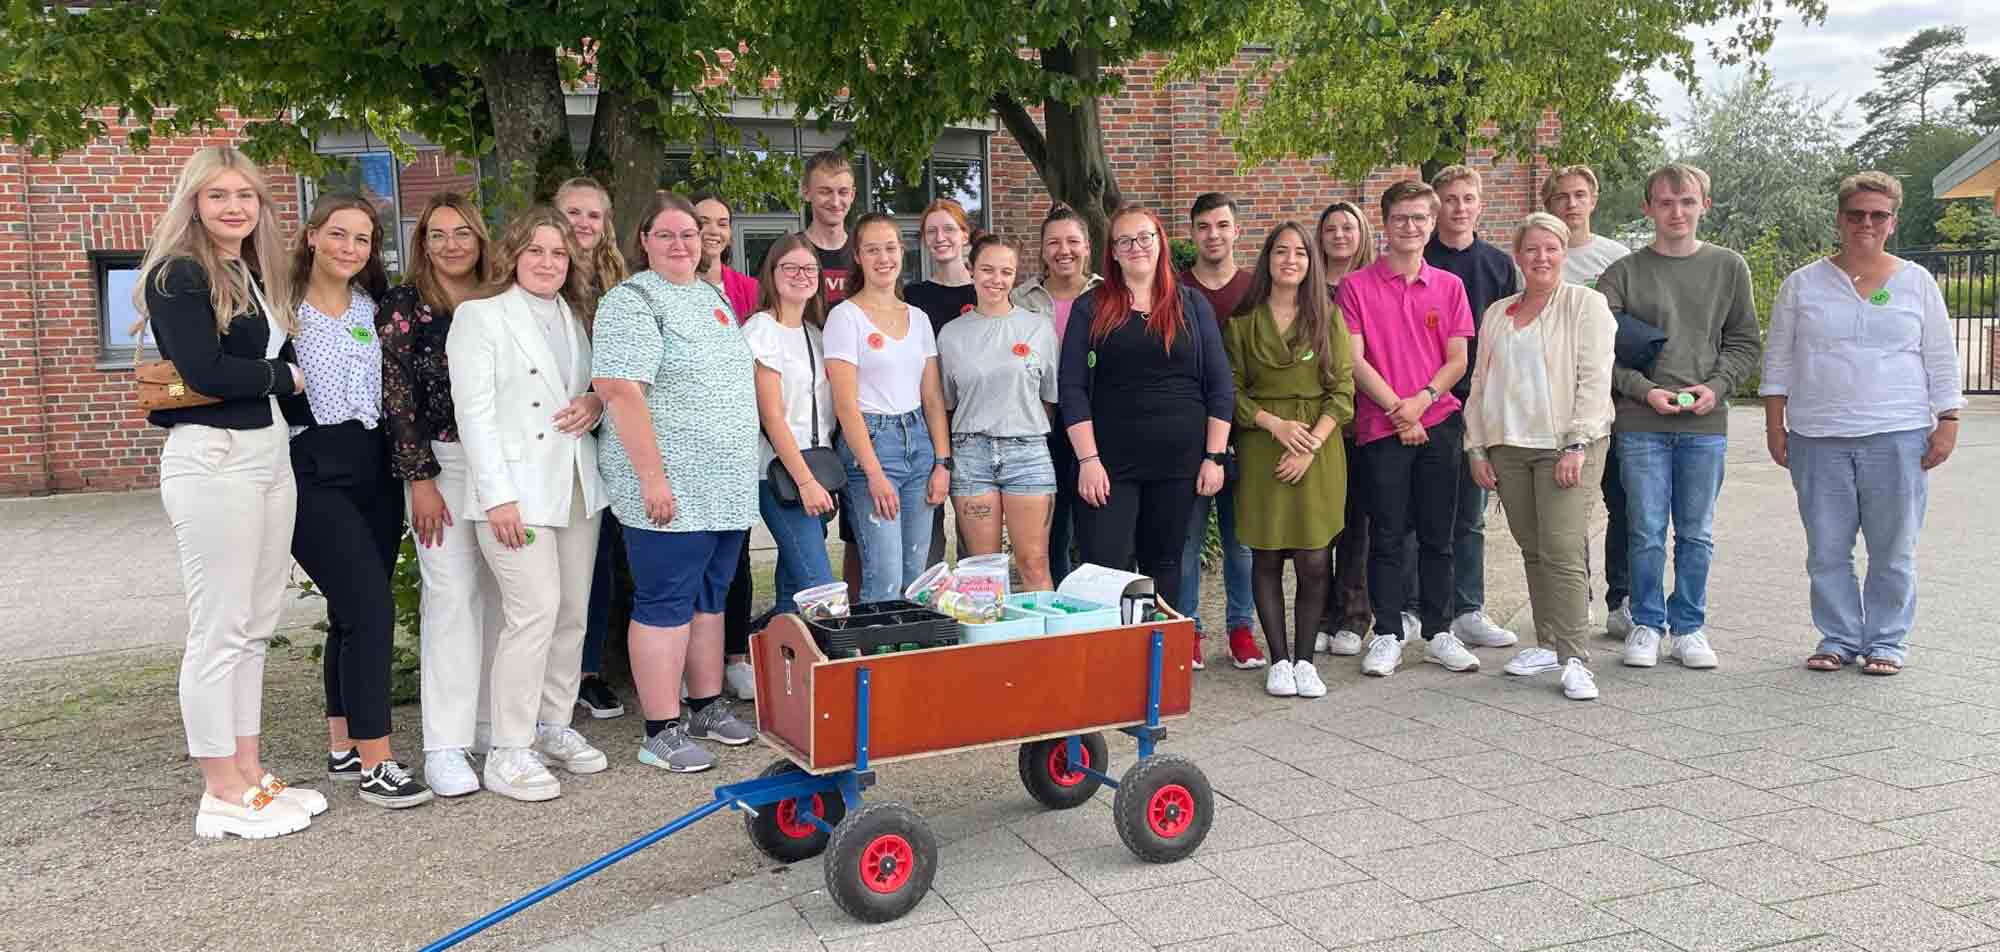 Schön, dass ihr da seid! Ausbildungsstart bei der Stadt Oelde, 10 neue Auszubildende im Vier Jahreszeiten Park begrüßt